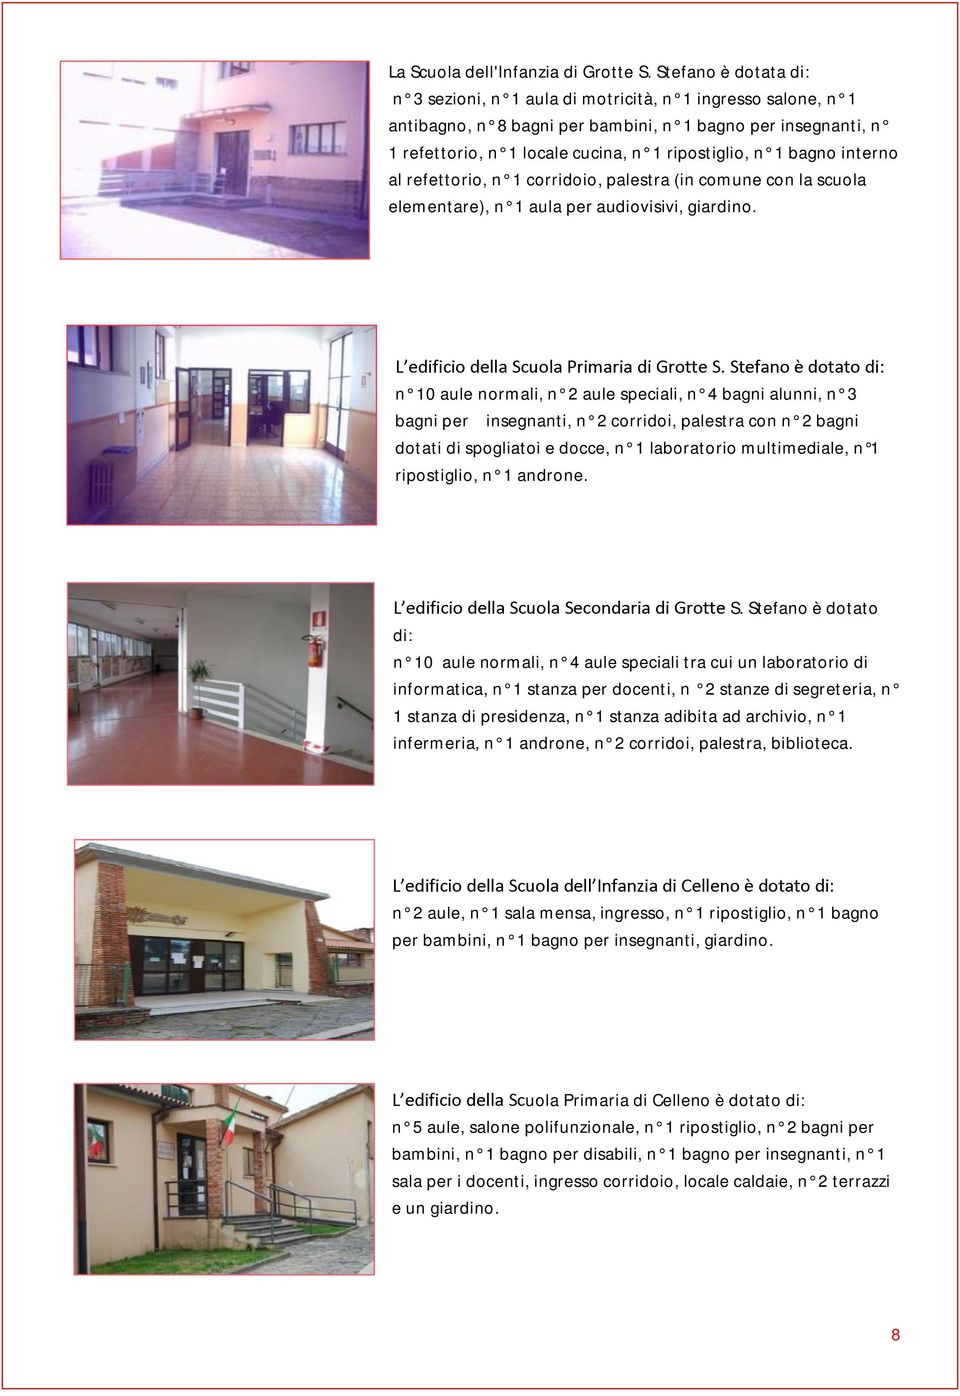 bagno interno al refettorio, n 1 corridoio, palestra (in comune con la scuola elementare), n 1 aula per audiovisivi, giardino.